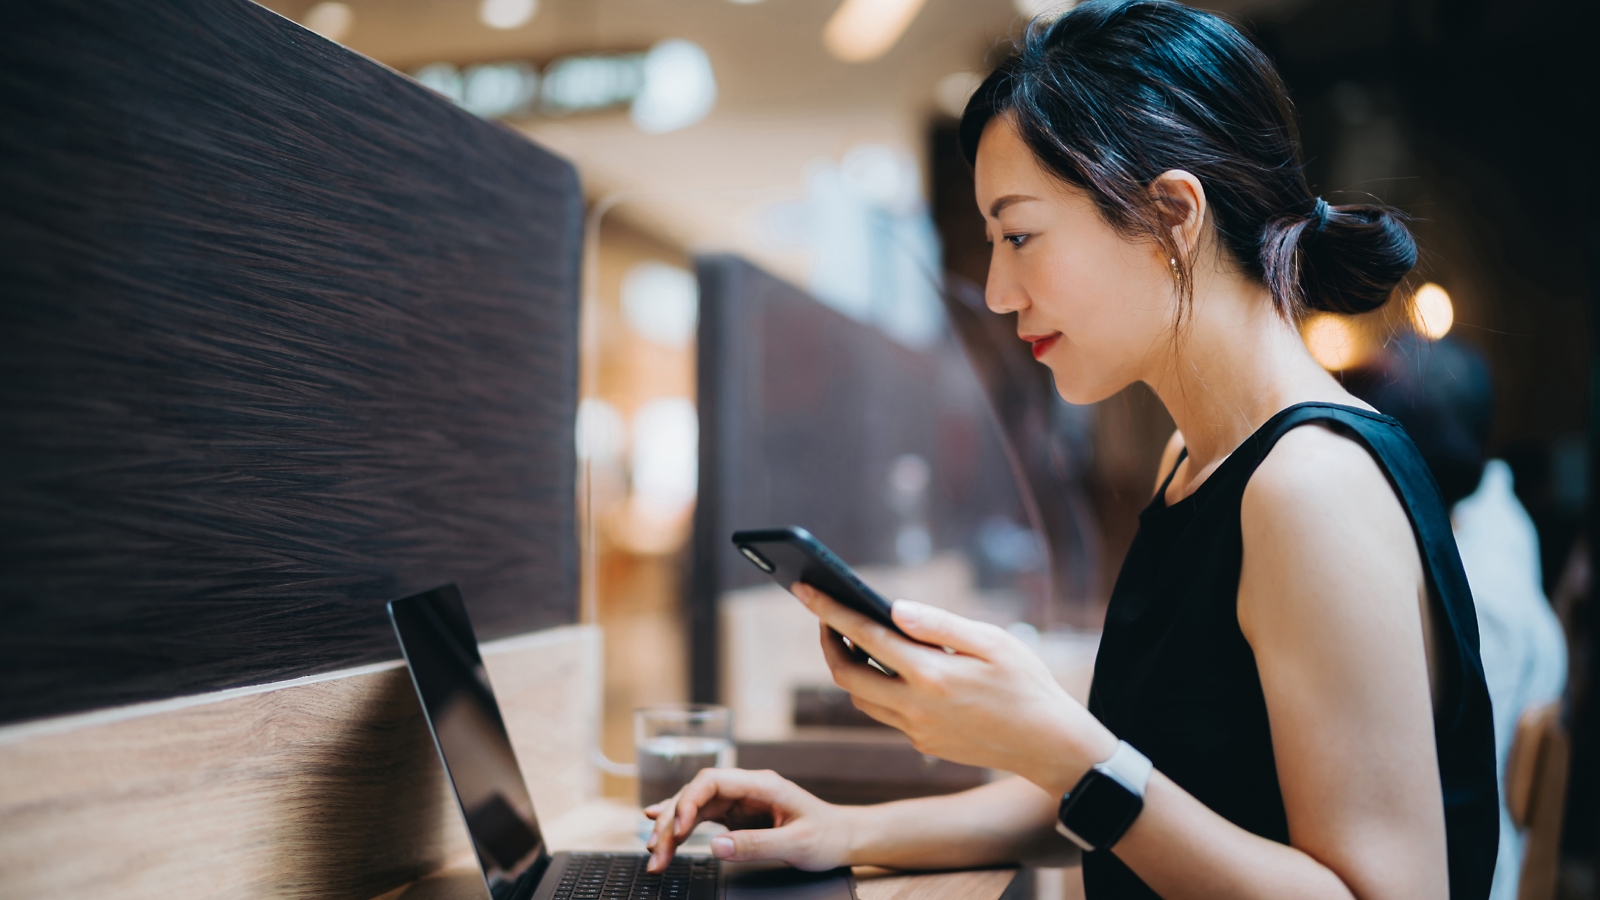 검은색 민소매 상의를 입은 한 여성이 책상에 앉아 스마트폰을 오른손으로 들고 노트북 자판을 입력하고 있습니다.